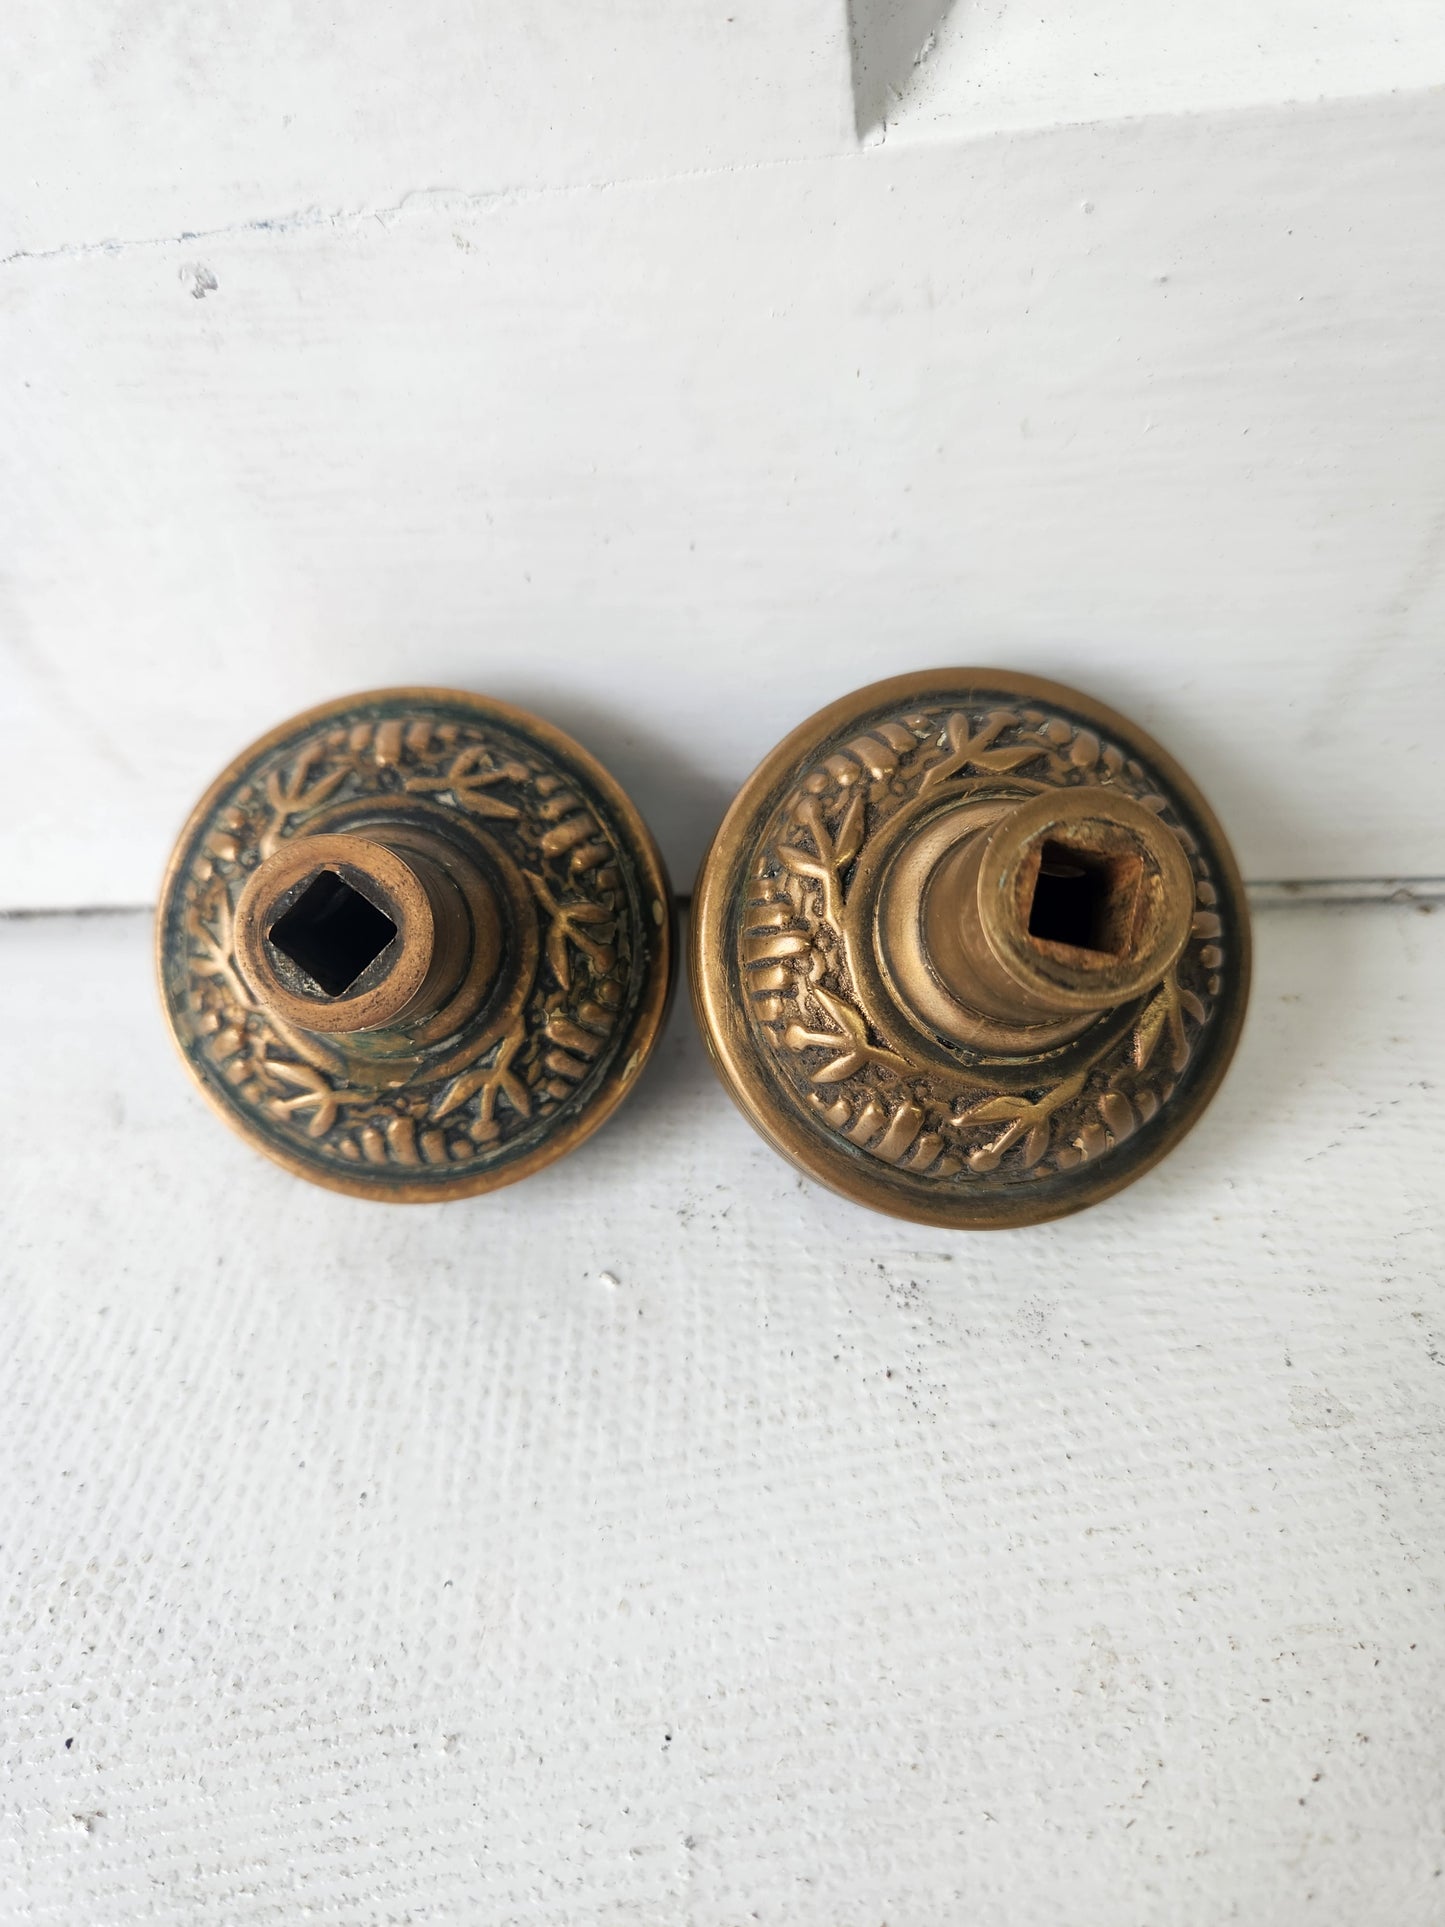 Two Windsor Design Door Knobs, Antique Solid or Cast Bronze Doorknobs, Victorian Hardware Victorian 092104